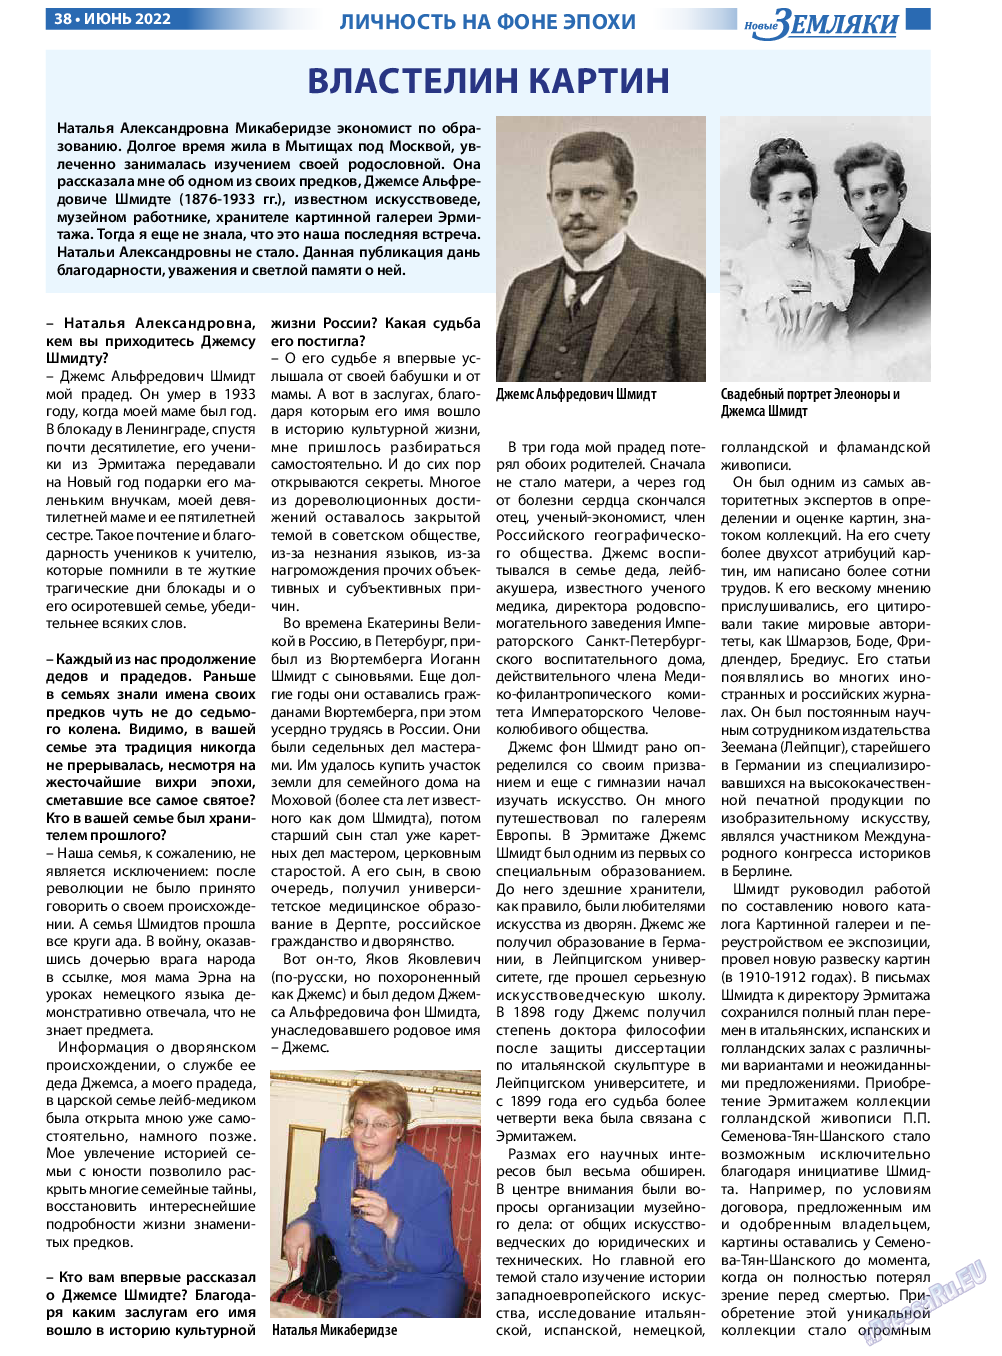 Новые Земляки, газета. 2022 №6 стр.38